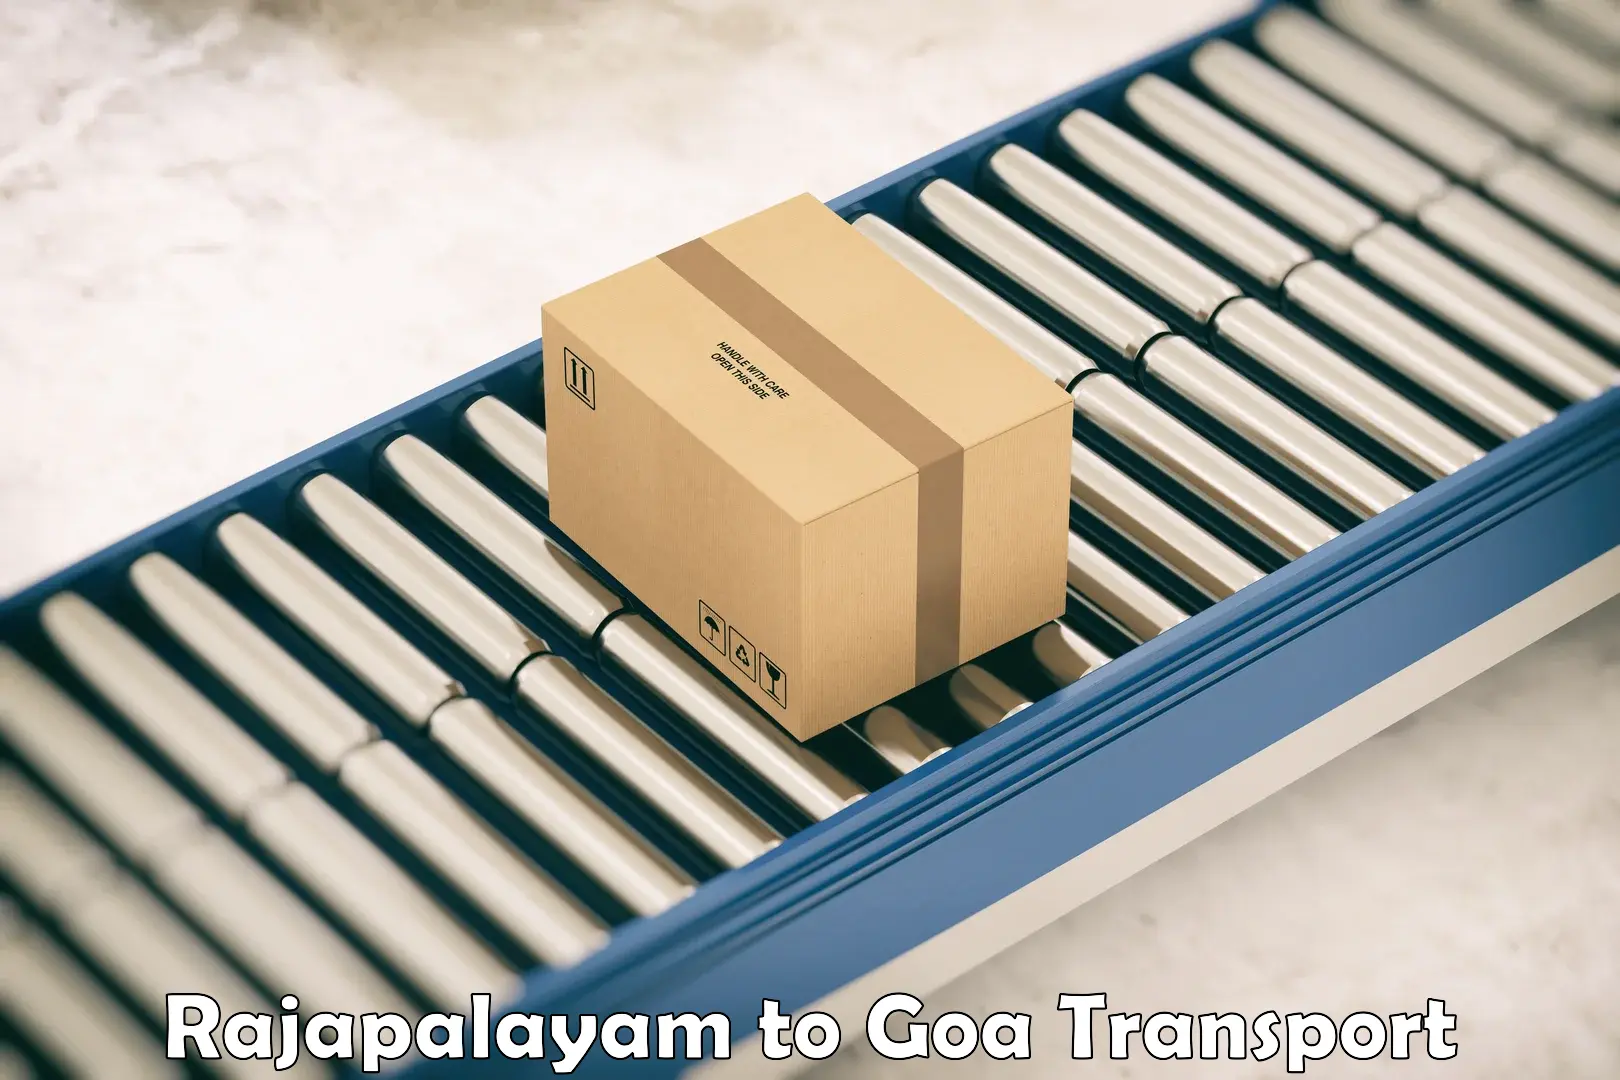 International cargo transportation services Rajapalayam to IIT Goa